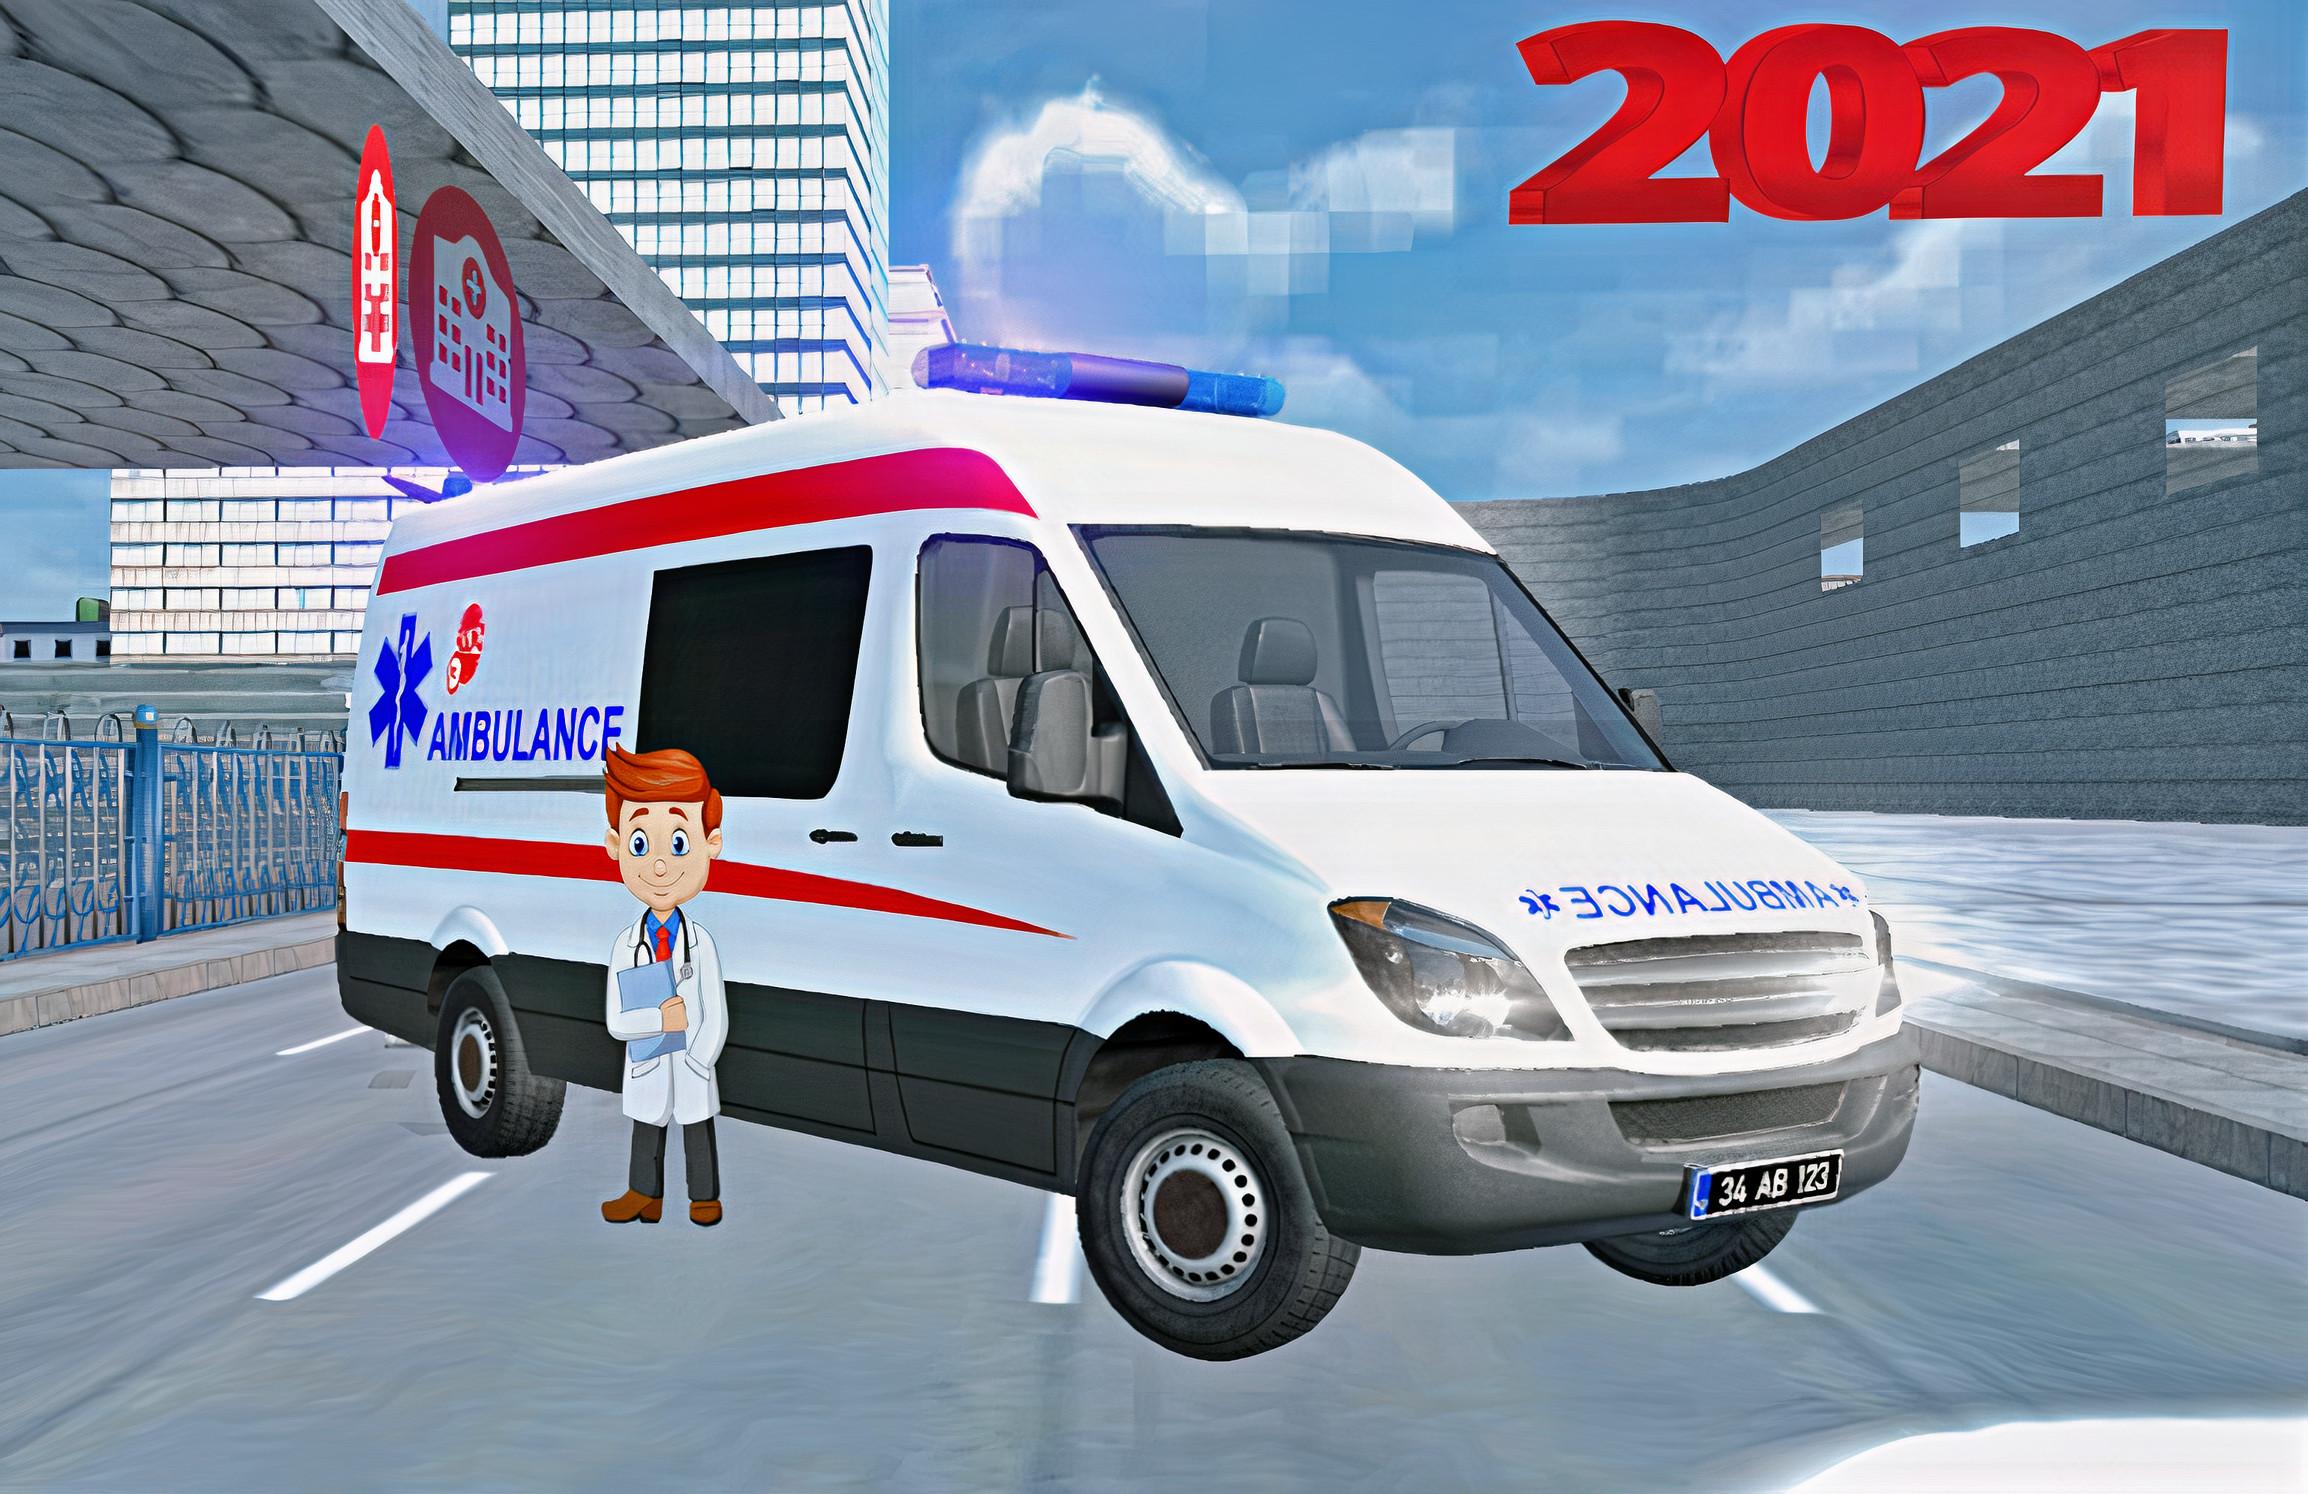 Real 112 Ambulance Car Game: Ambulance Games 2021 1.1 Screenshot 8